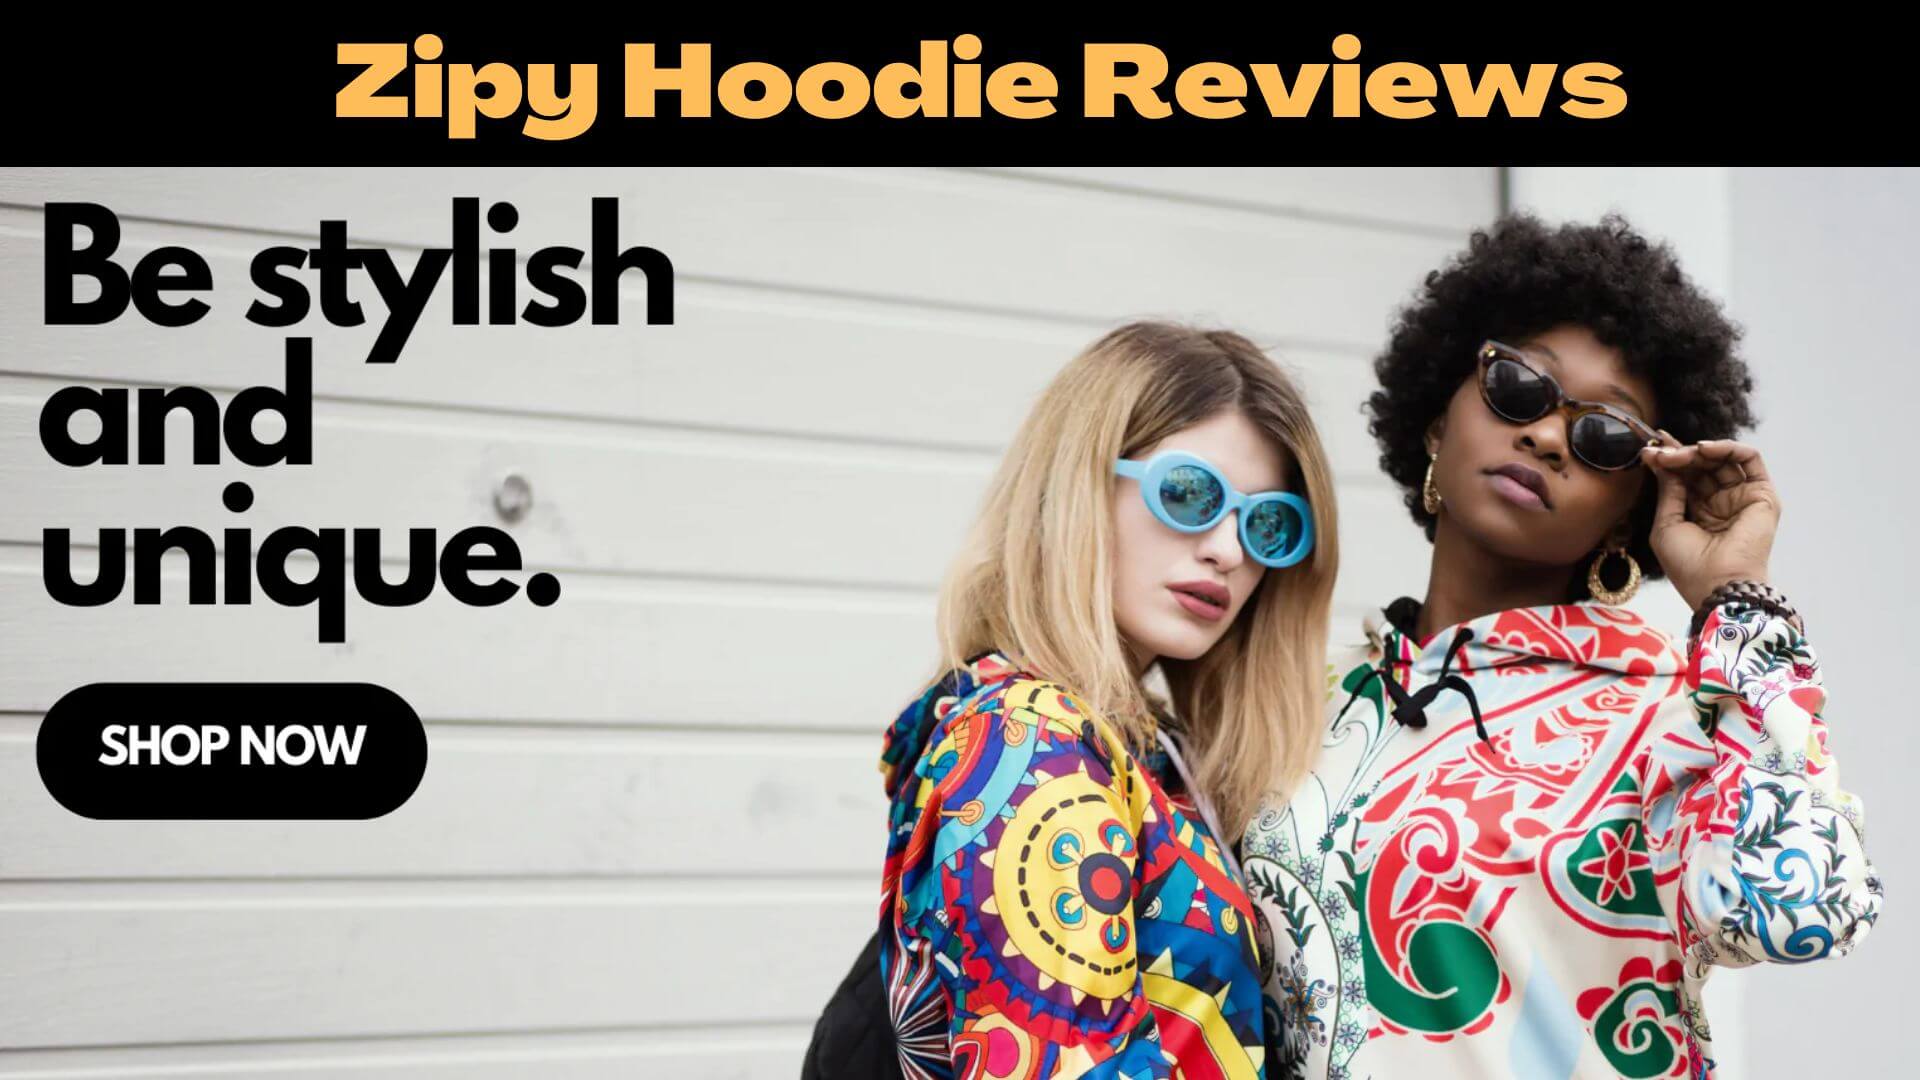 Zipy Hoodie Reviews